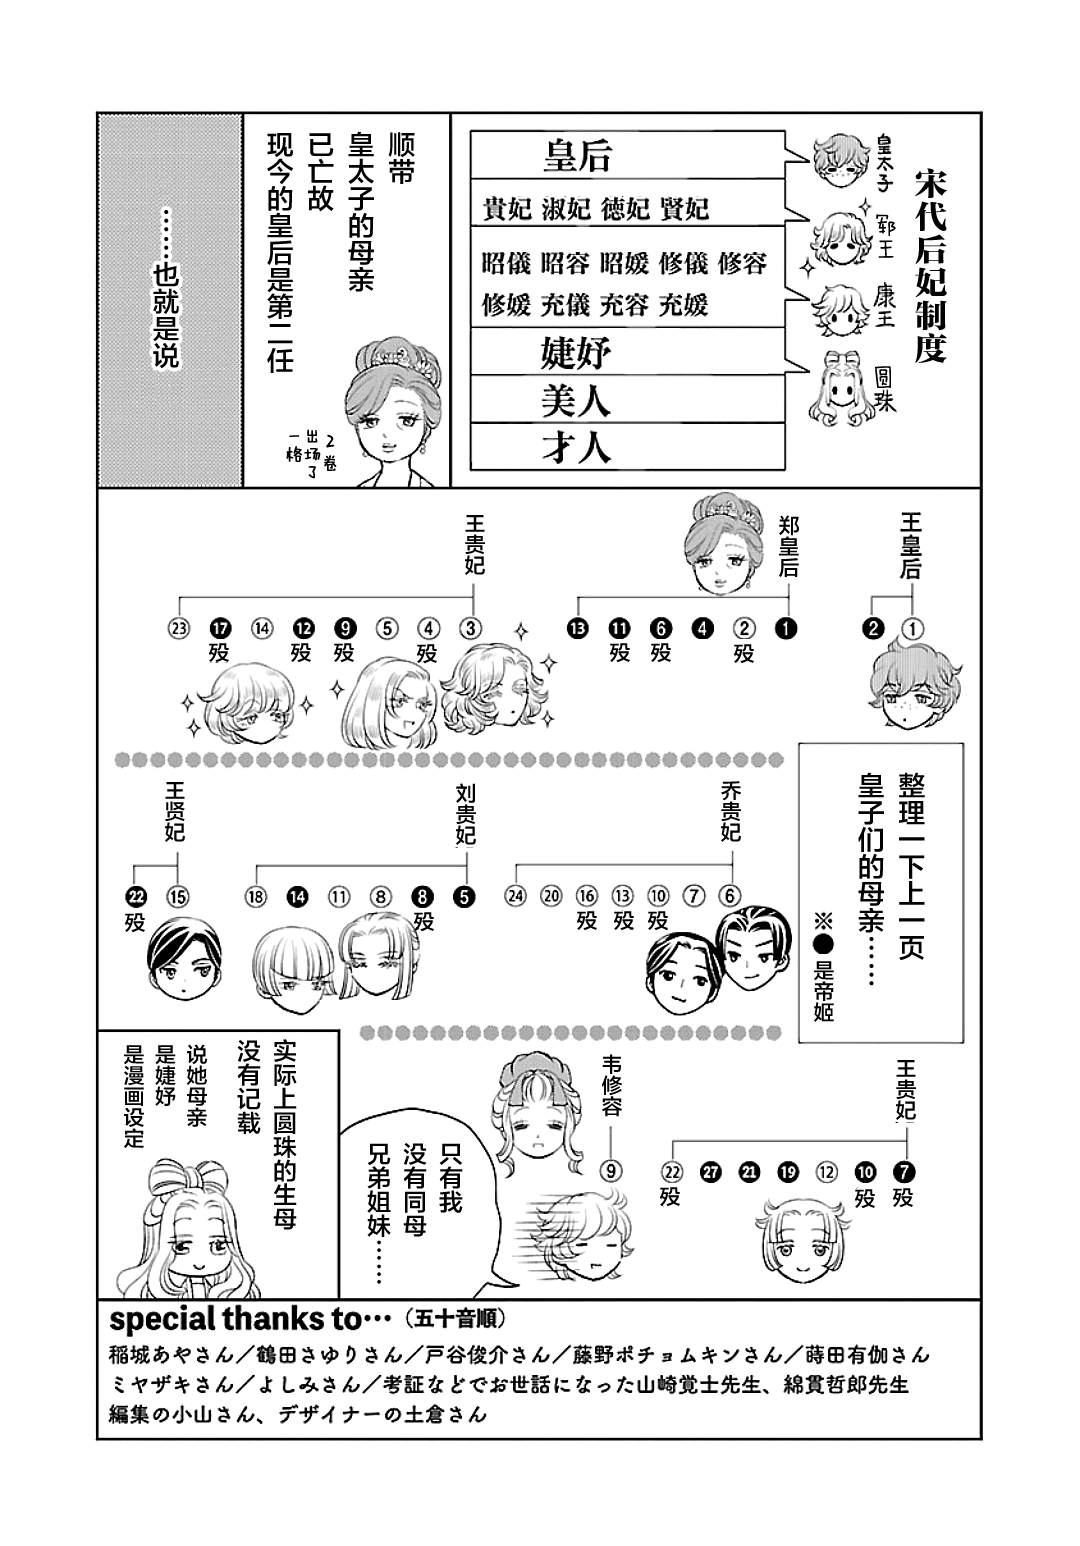 天上恋歌~金之公主与火之药师~漫画,第四卷后记2图